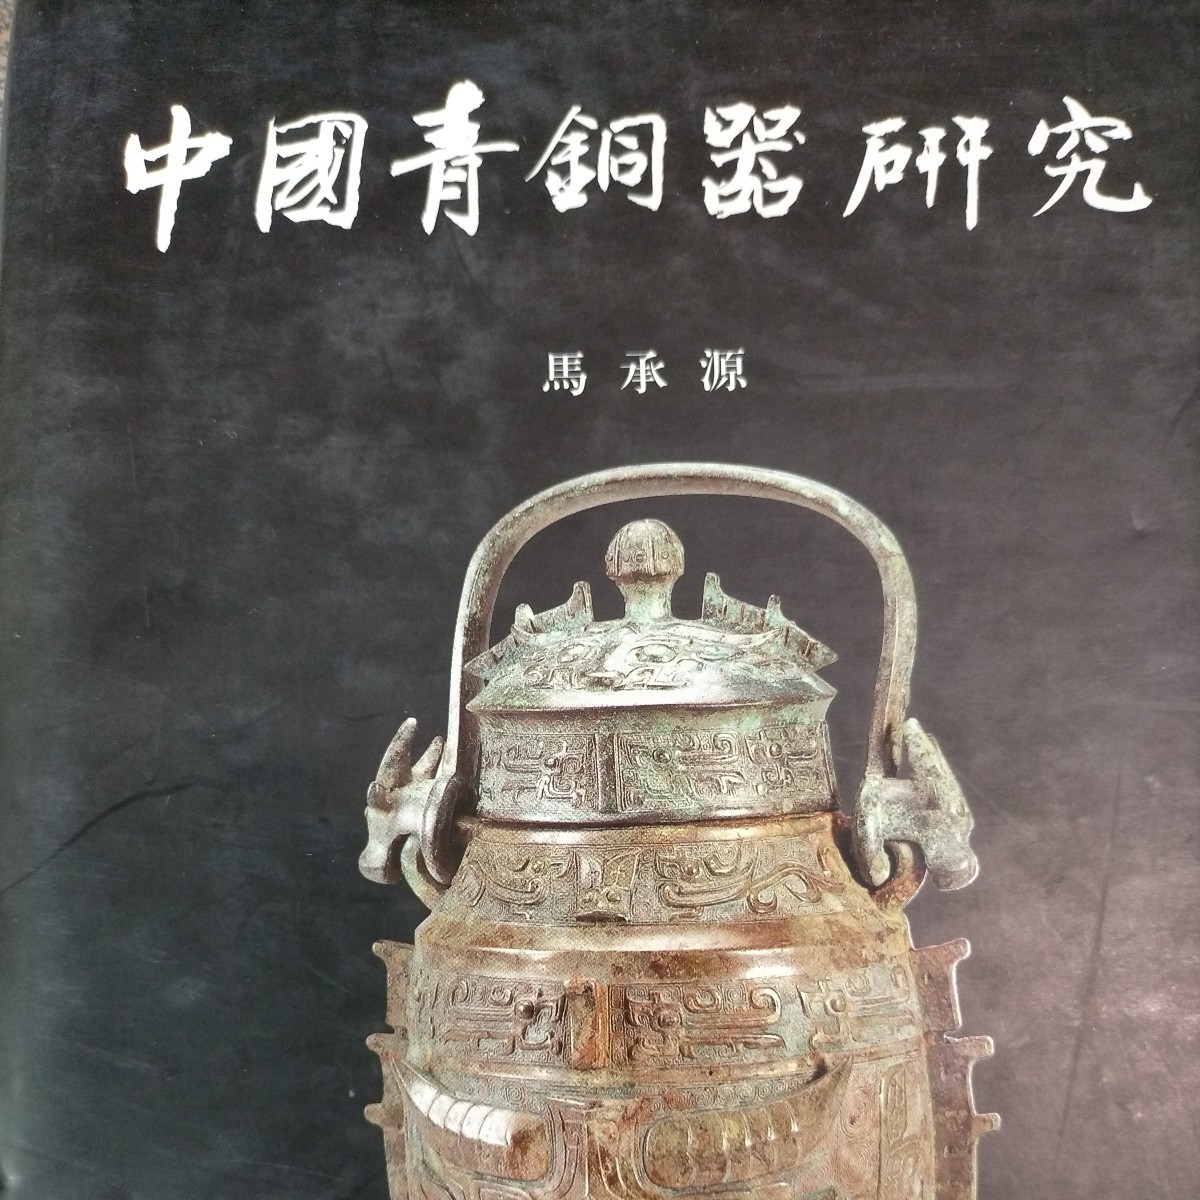 大陸本「中国青銅器研究」上海古籍出版_画像2